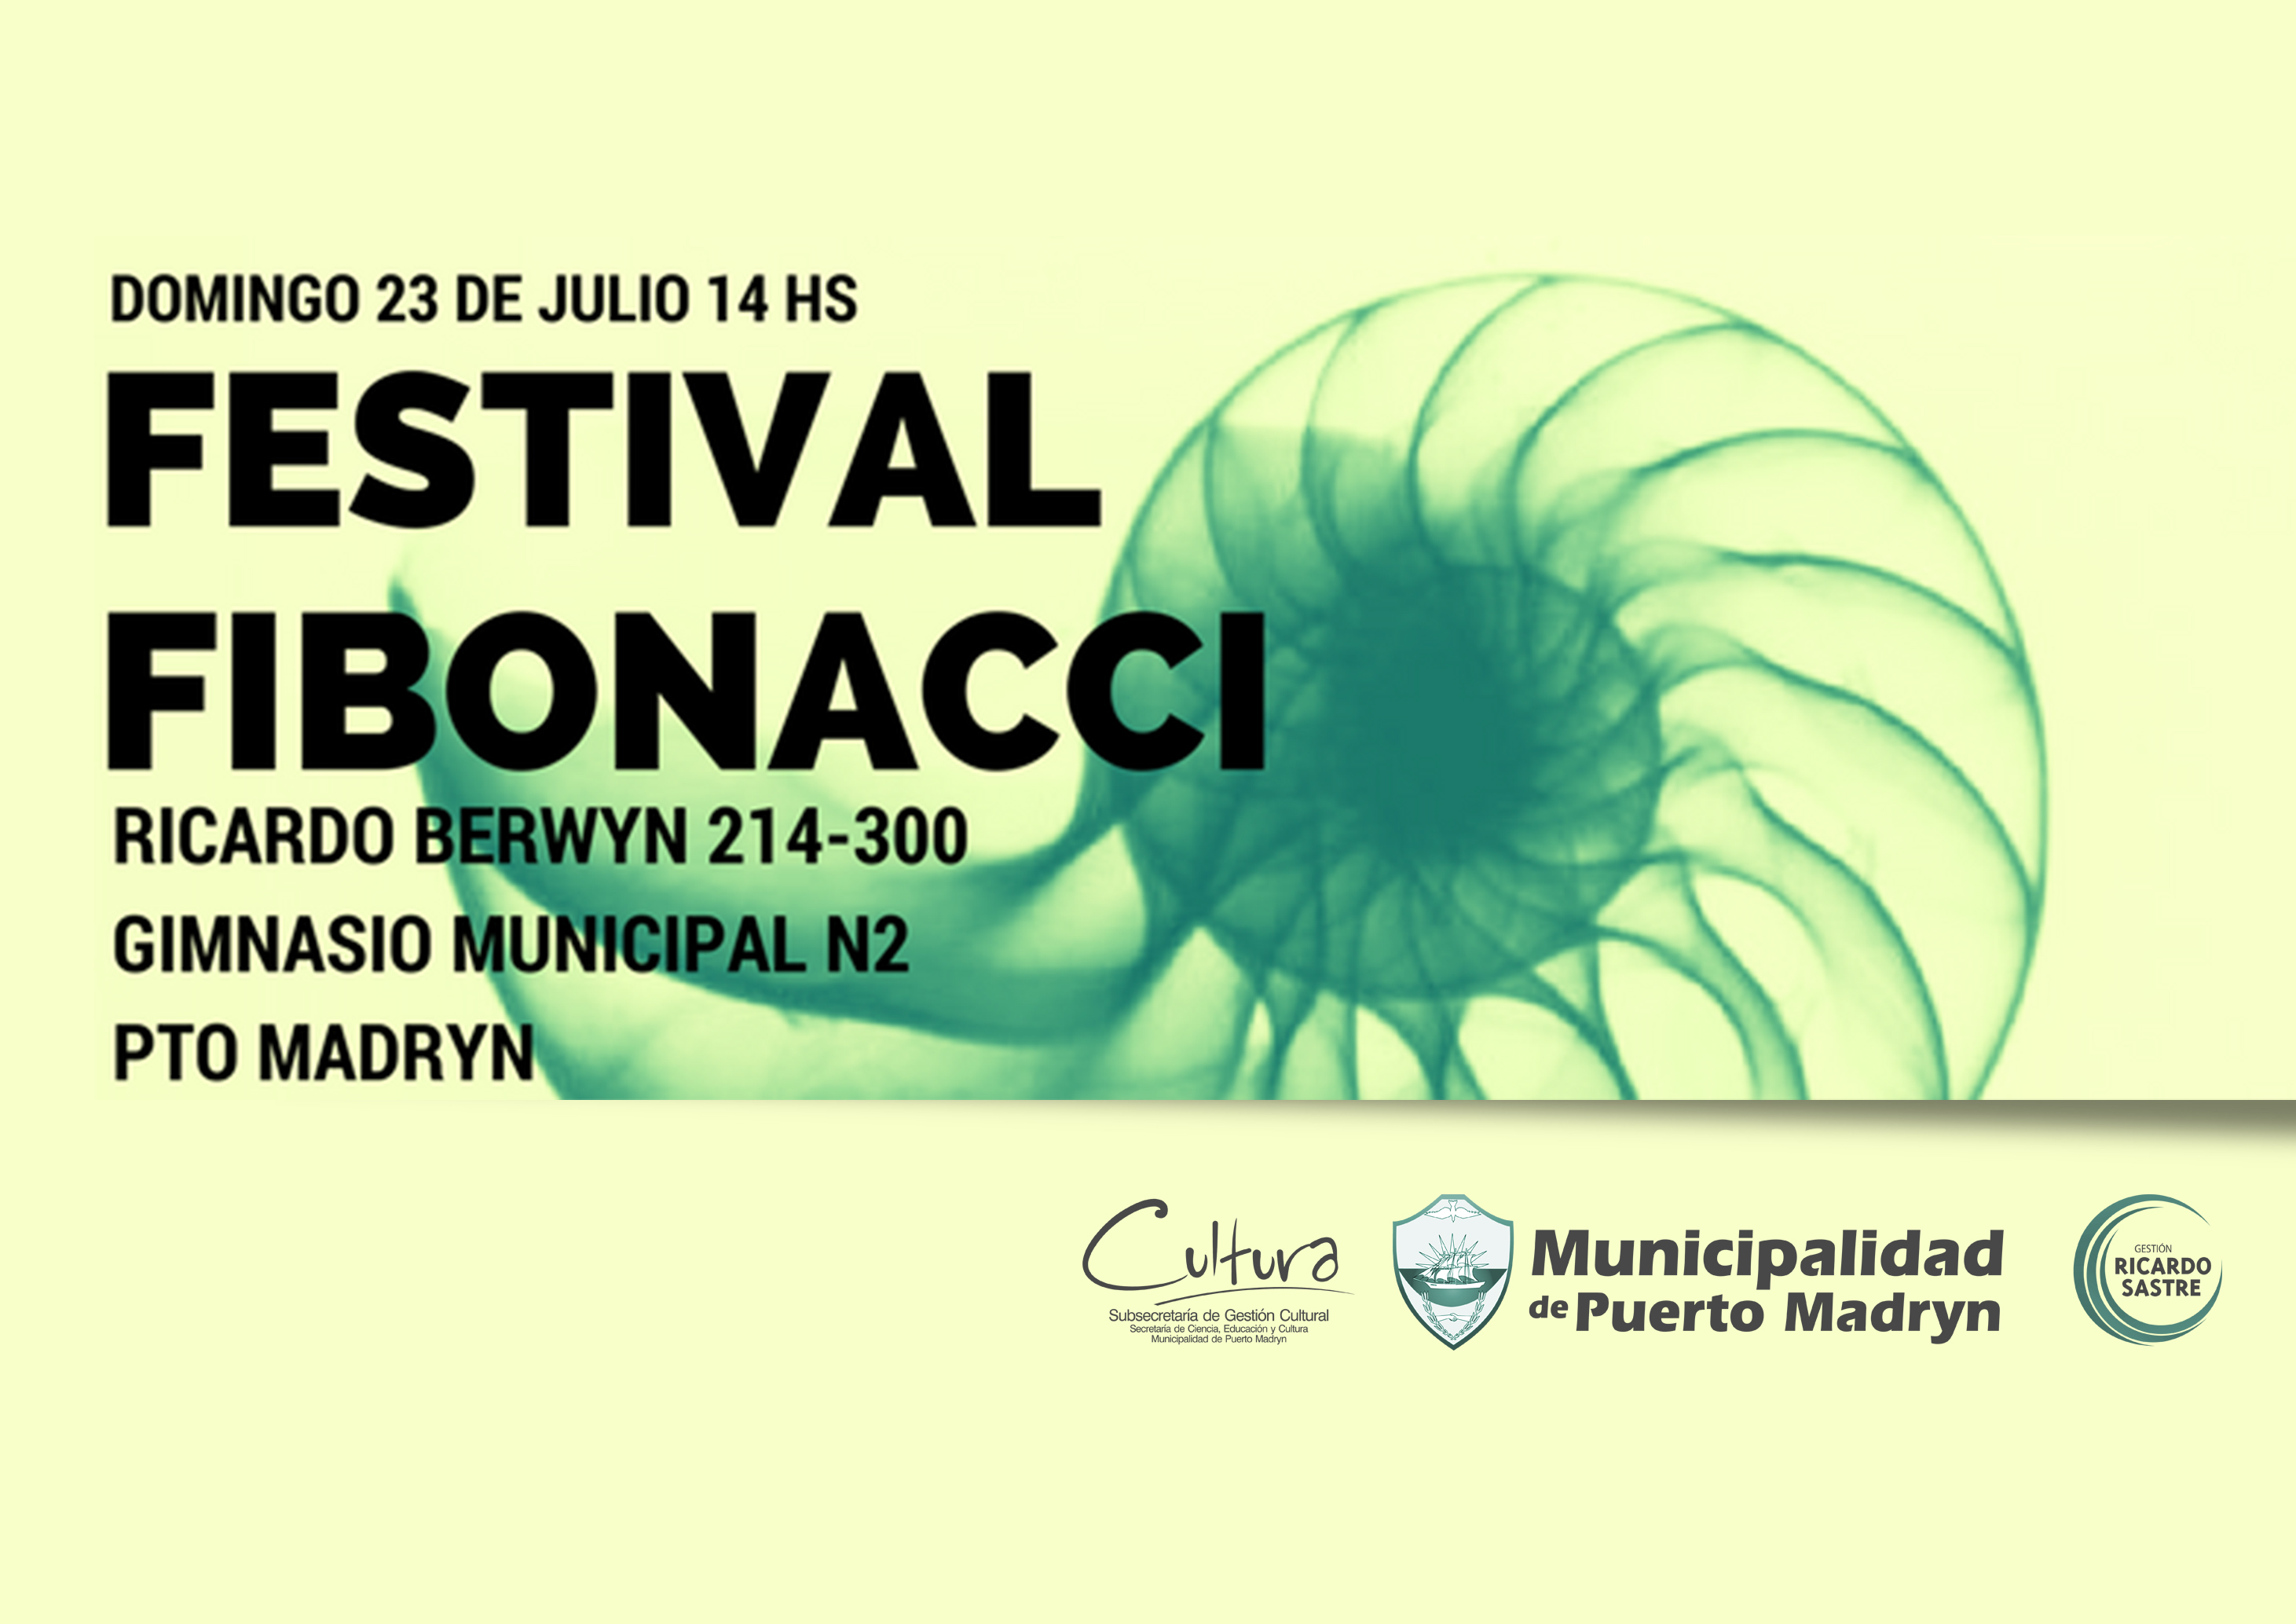 Invitan a la 1º Edición del Festival Fibonacci